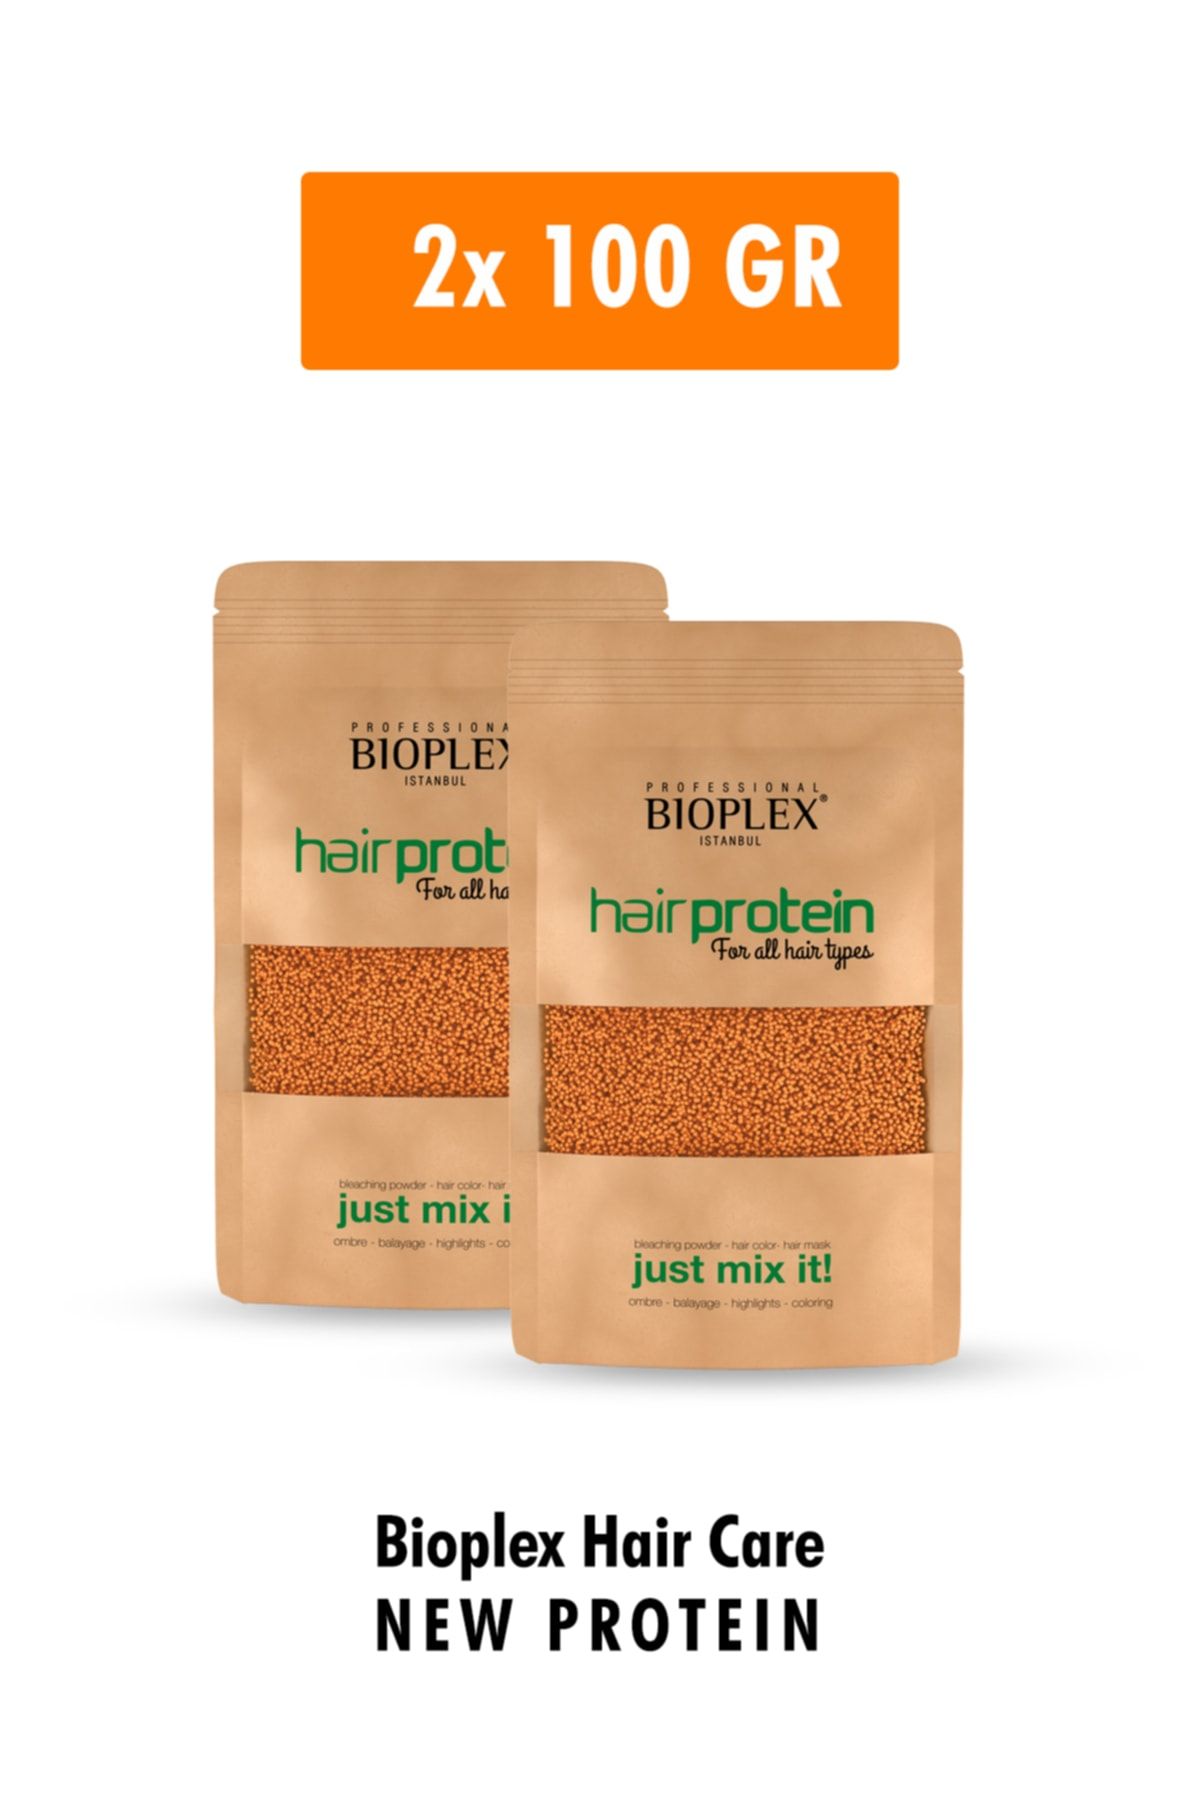 Bioplex Saç Bakım Proteini - Saç Açma Ve Boya Işlemlerinde Yıpranmalara Karşı Özel Ürün 2x100 Gr - 2 Paket